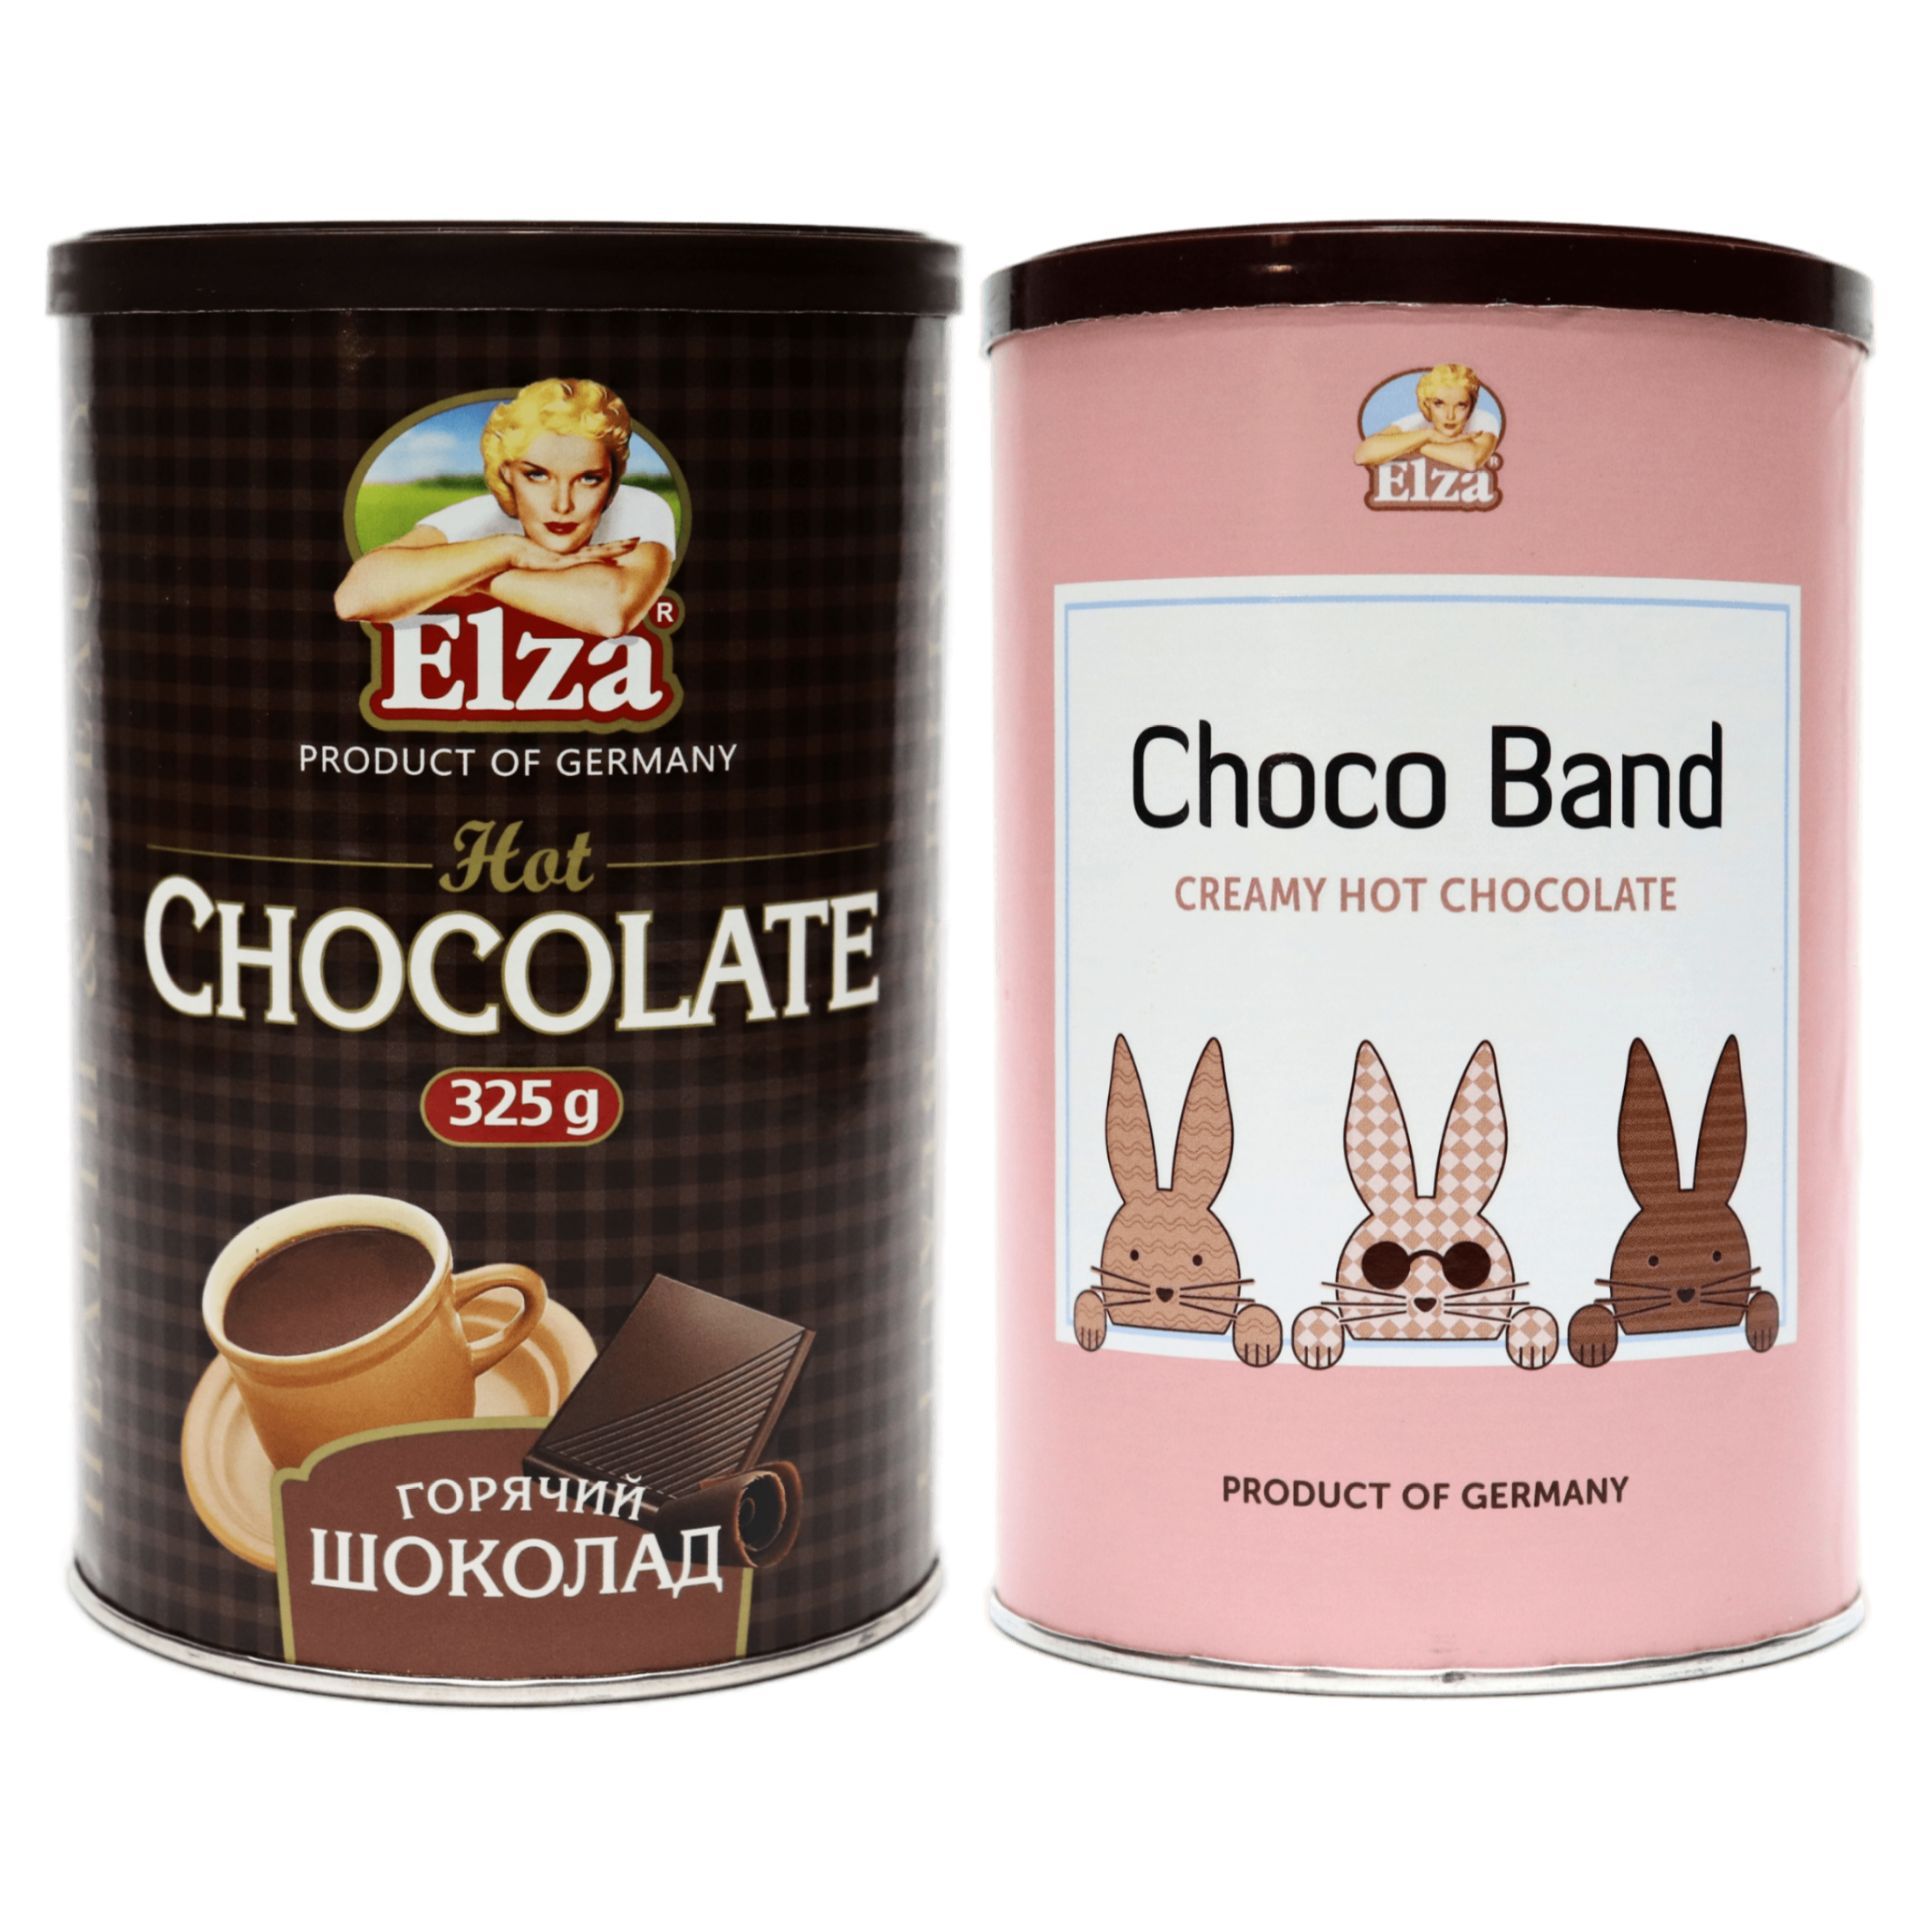 Elza Choco Band. Горячий шоколад растворимый Elza Choco Band. Elza Choco Band растворимый напиток.